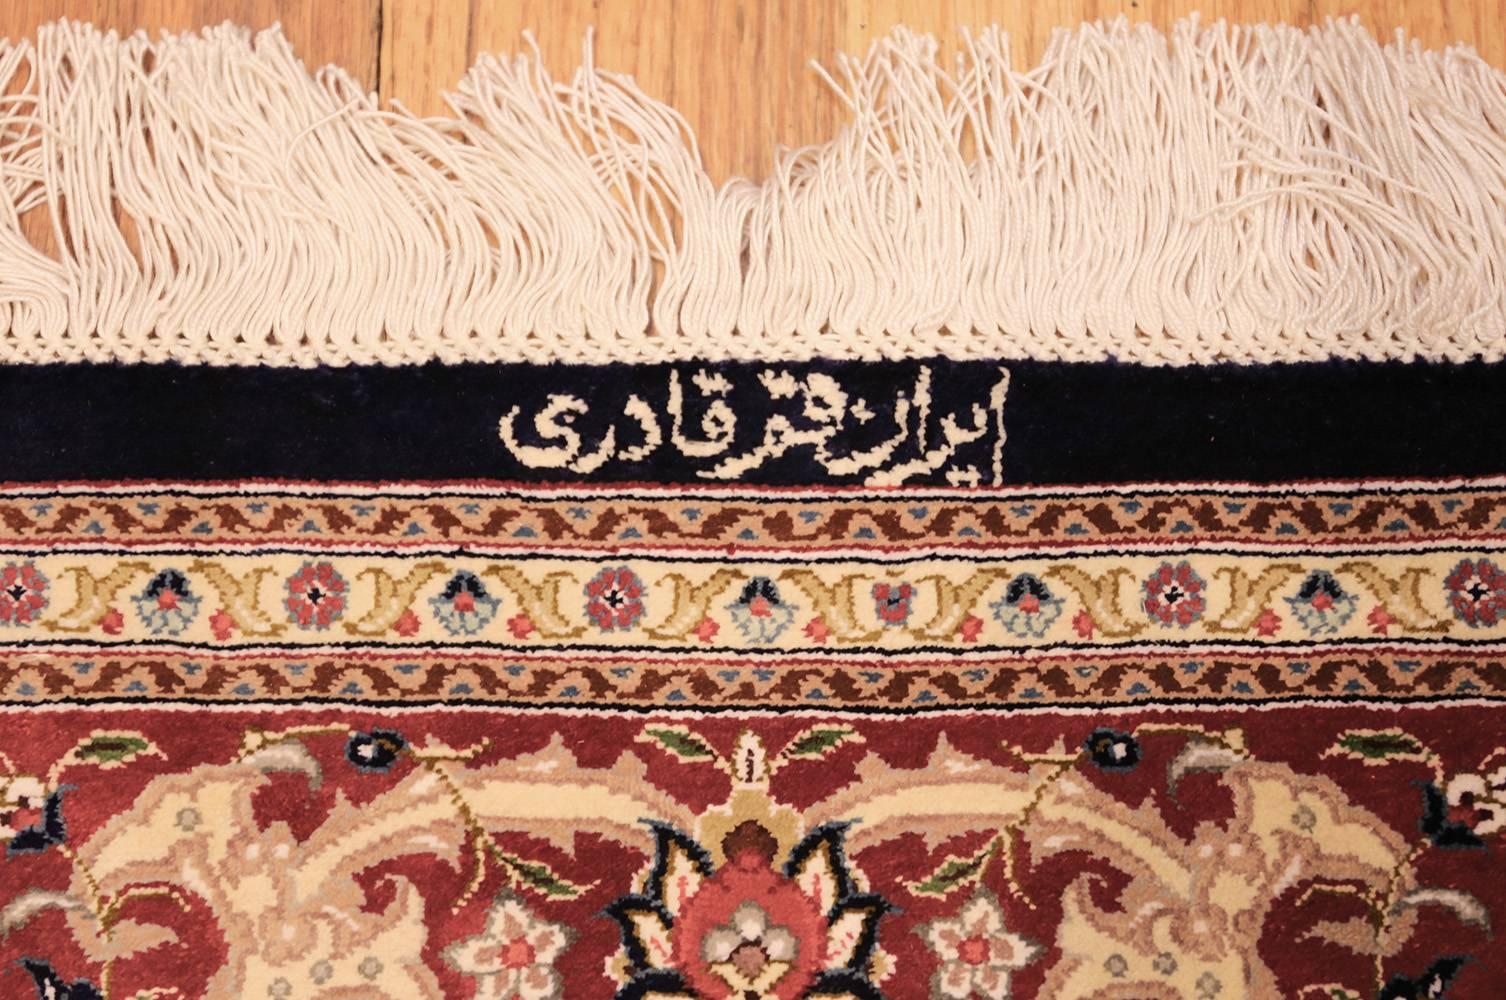 Tapis persan Qum en soie à fond bleu marine, Pays d'origine / Type de tapis : Tapis persan moderne, Circa Date : Fin du 20e siècle. Taille : 3 ft 4 in x 5 ft (1,02 m x 1,52 m).